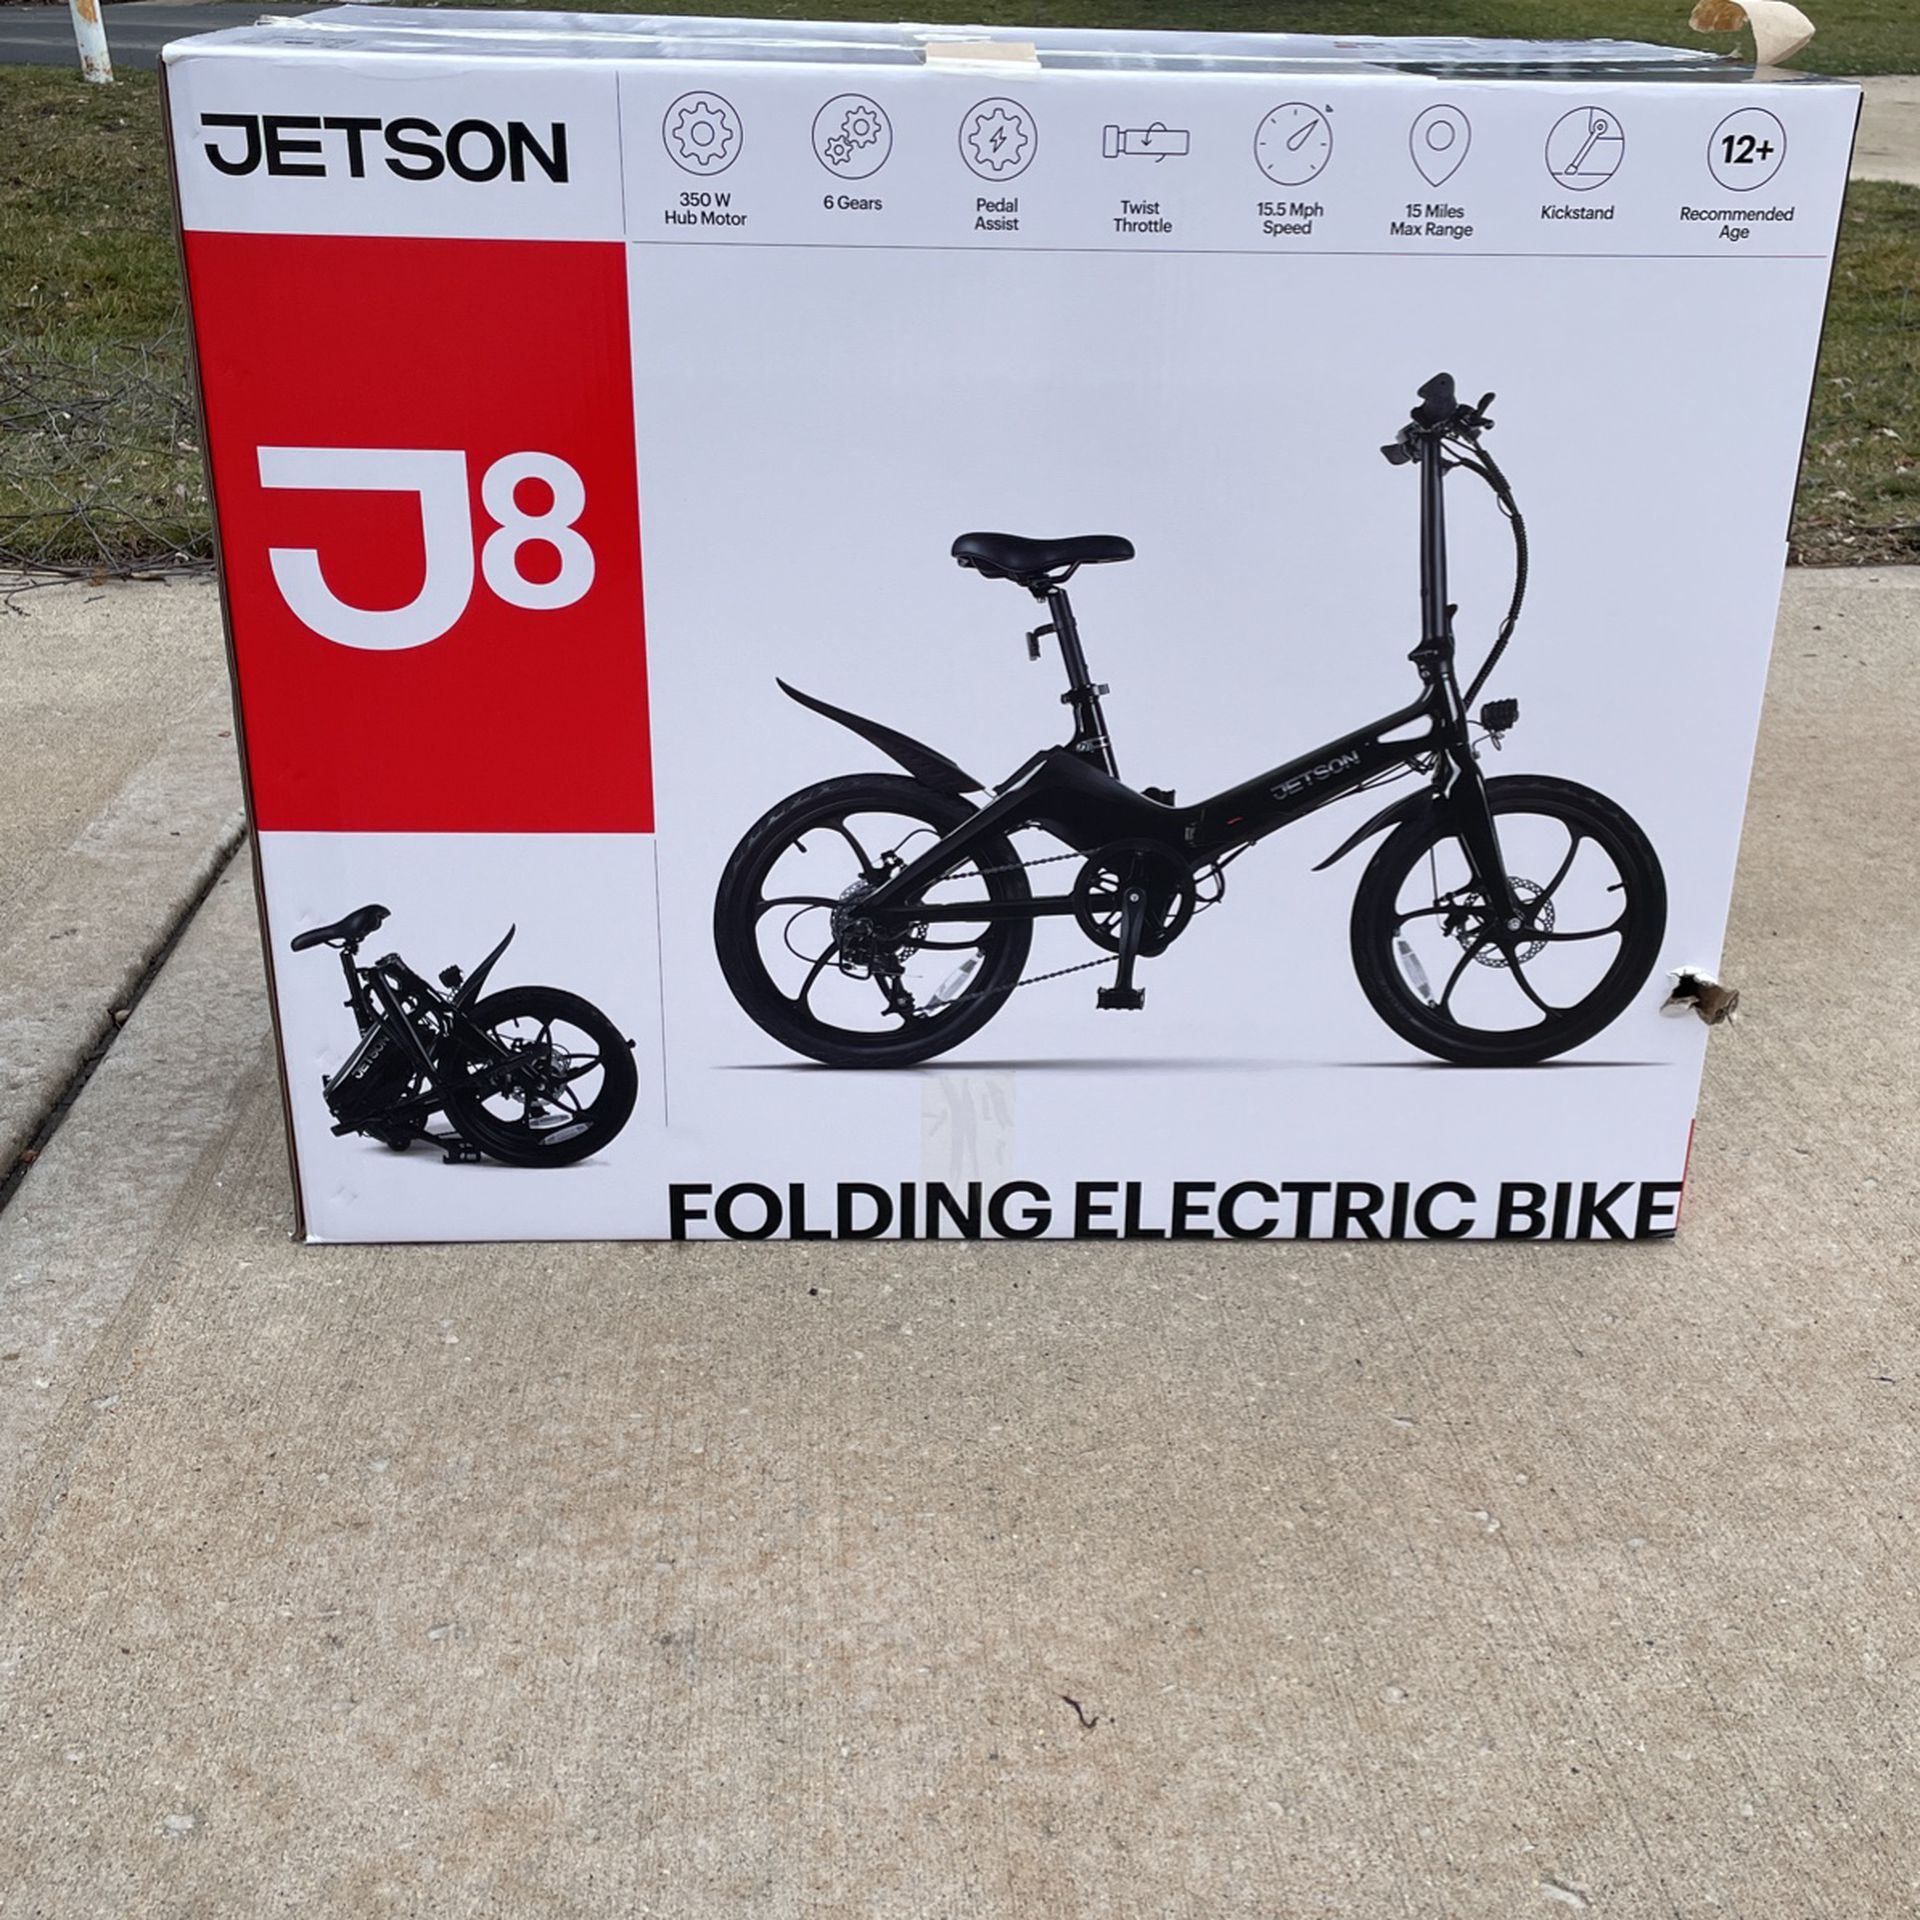 Jetson/ J8/ Folding Electric Bike/